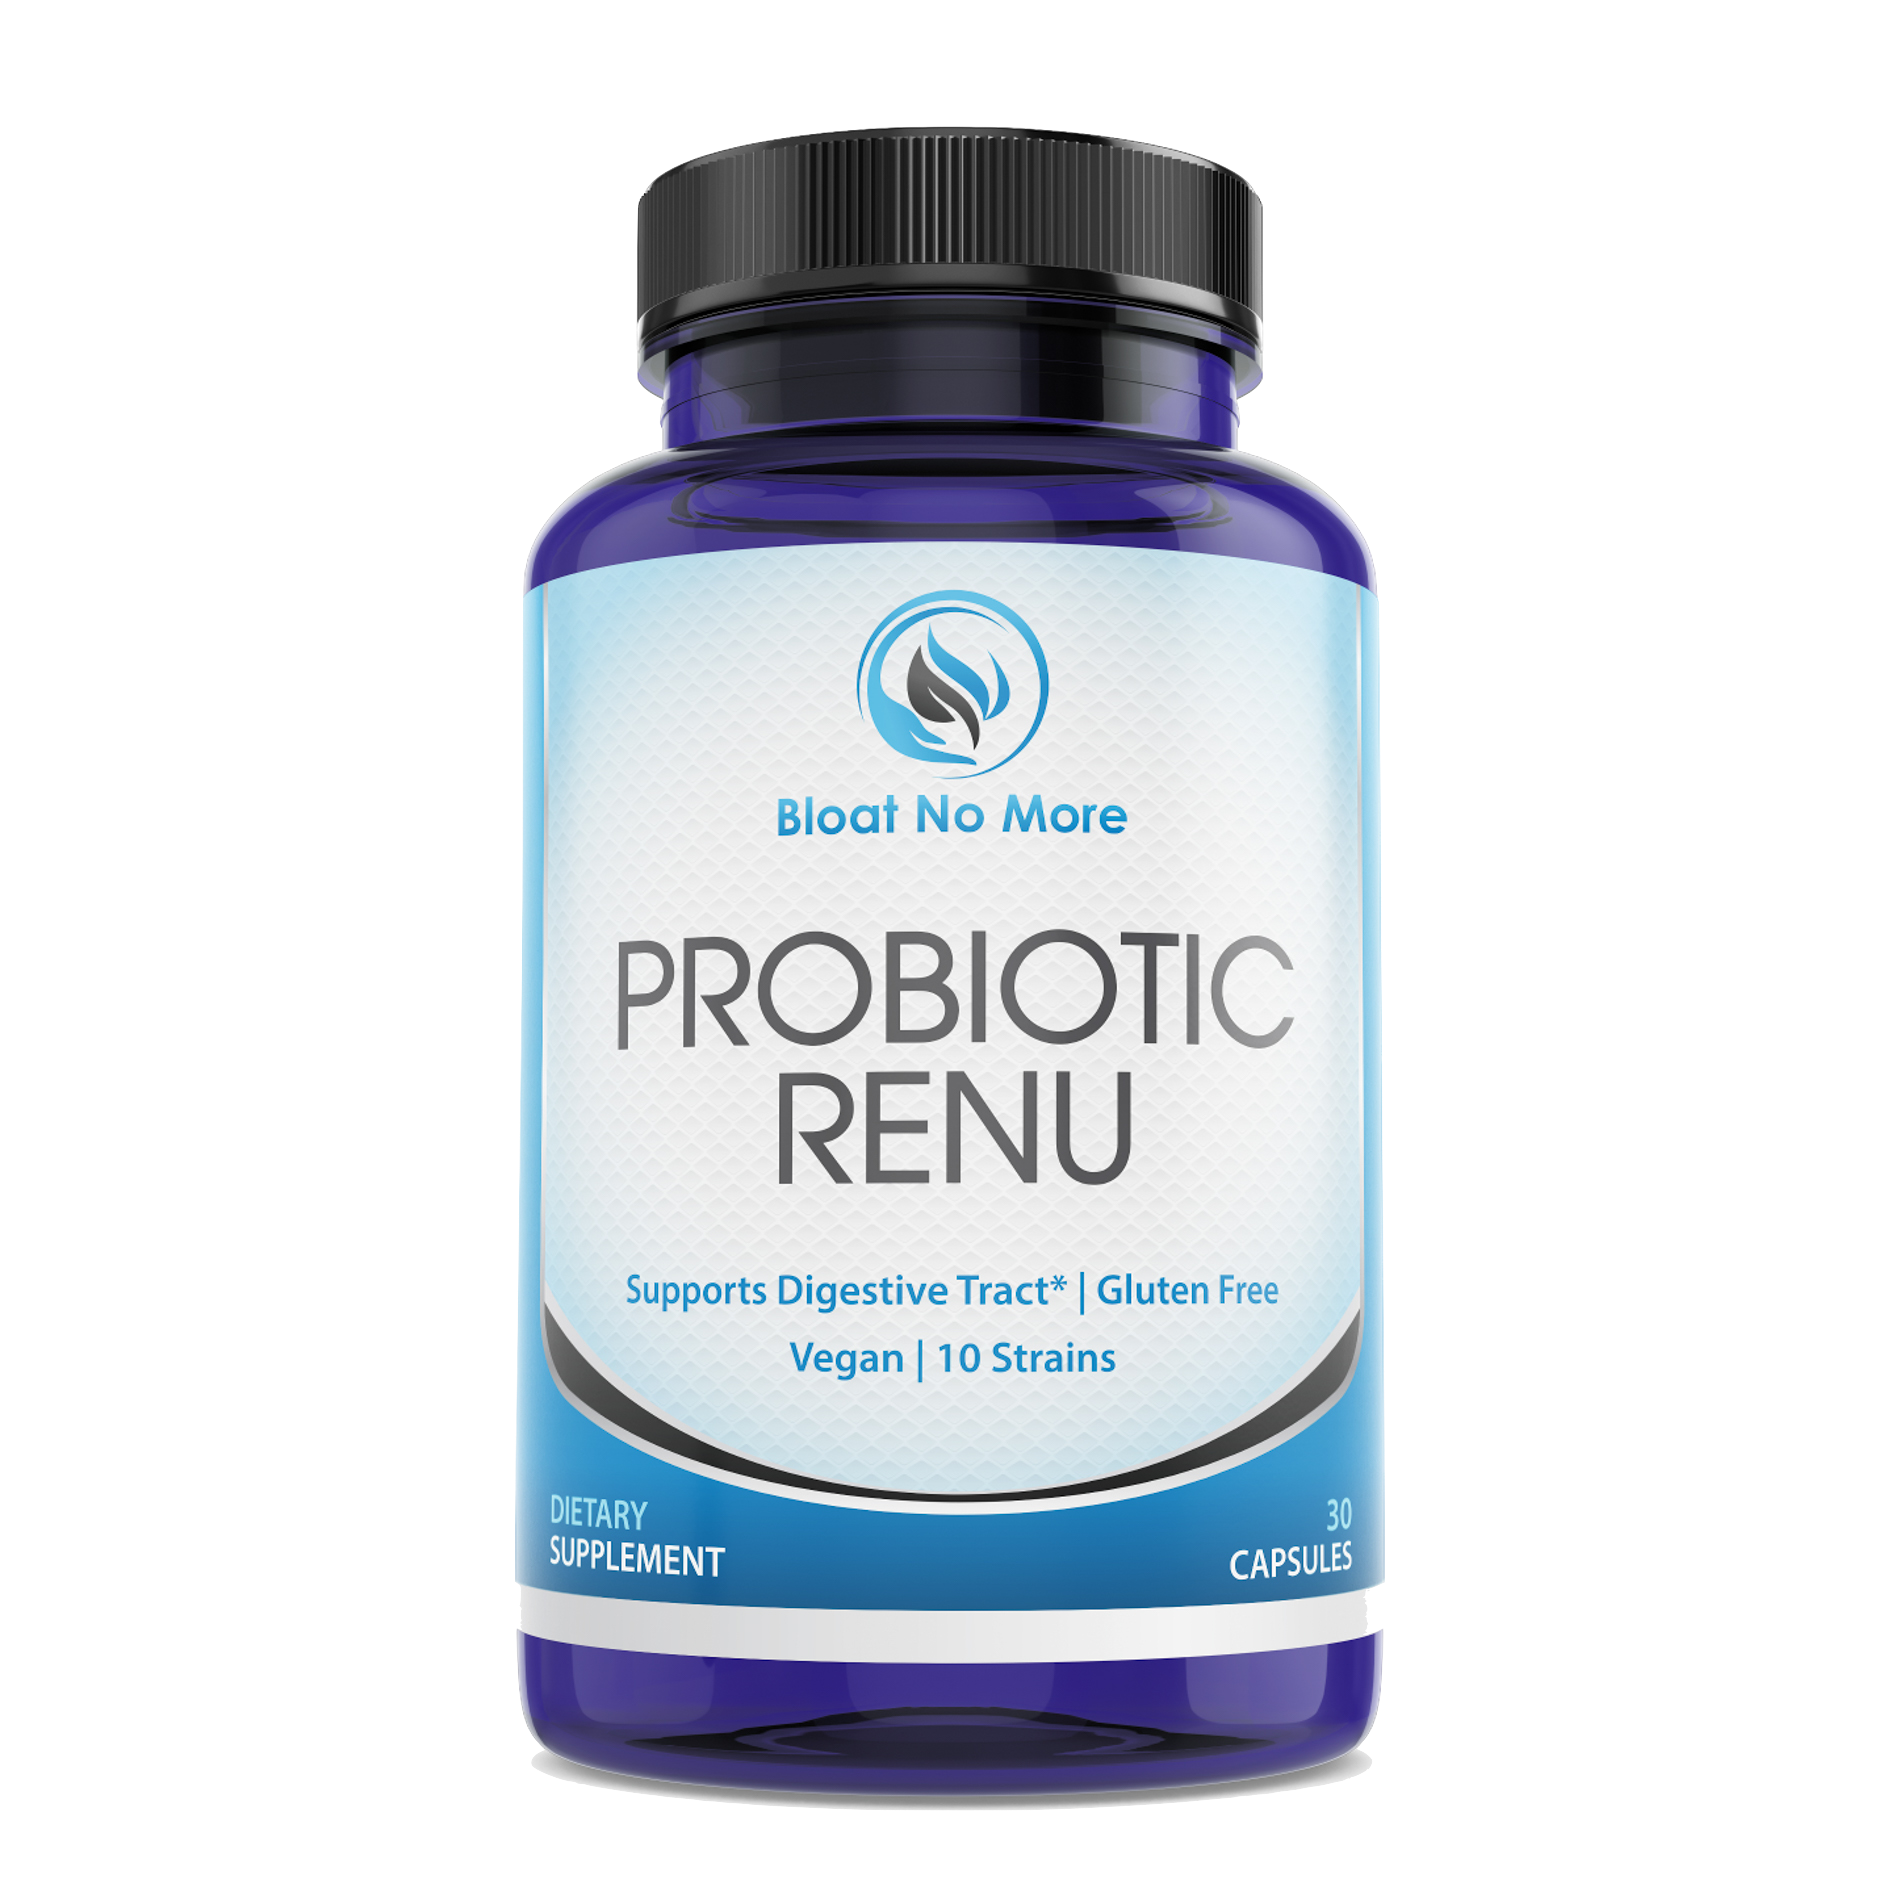 Bloat No More Probiotic Renu